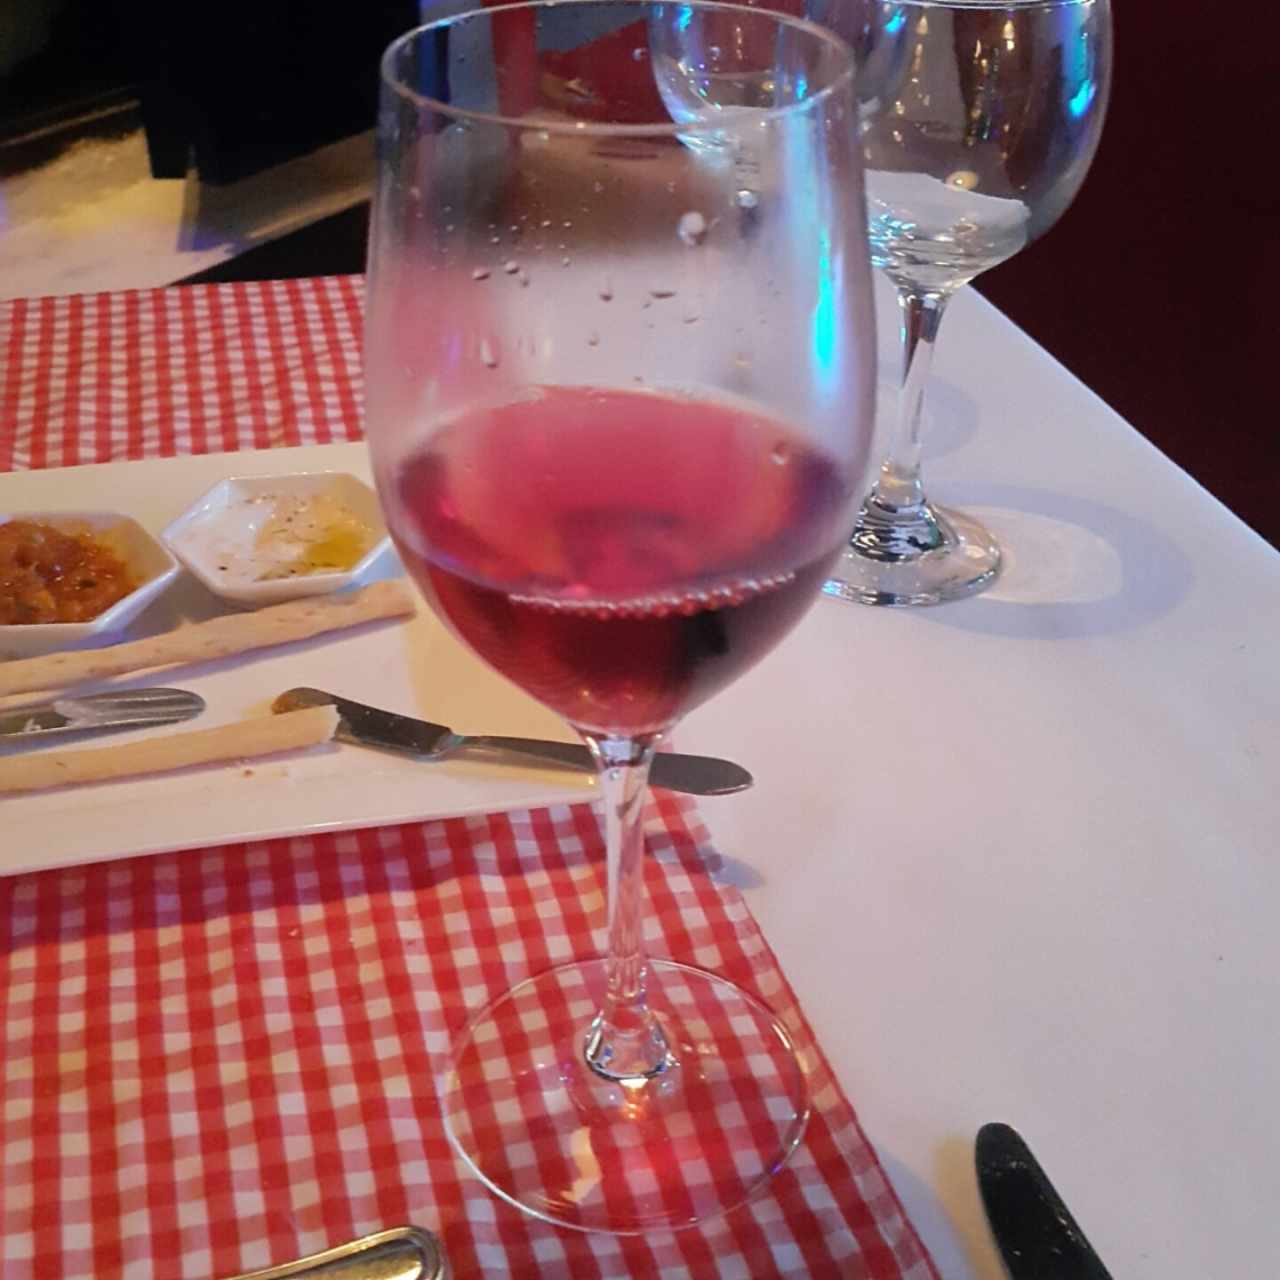 vino rosado español valdelosfrailes 2015